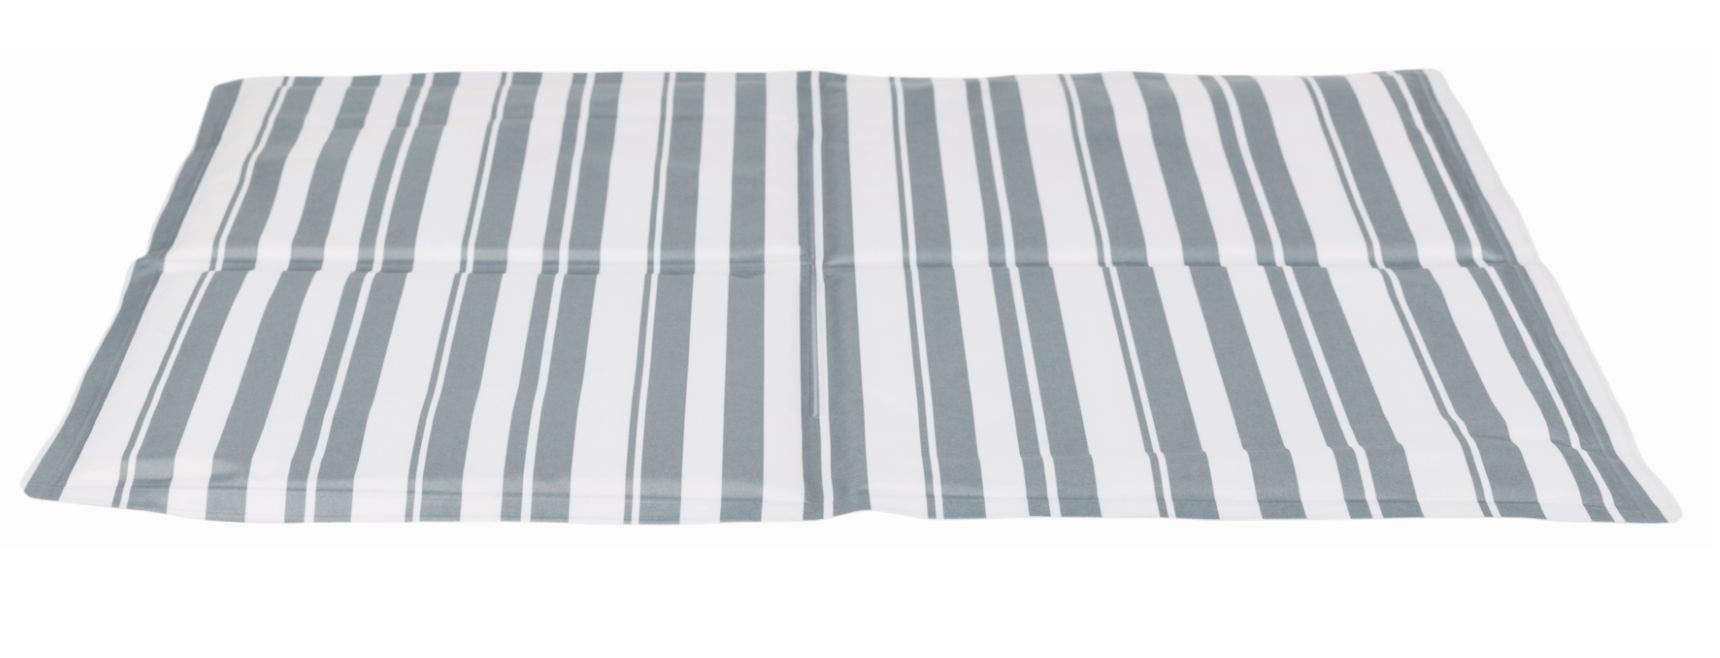 Коврик охлаждающий для собак TRIXIE 28774 текстиль, белый, серый, 65x50 см